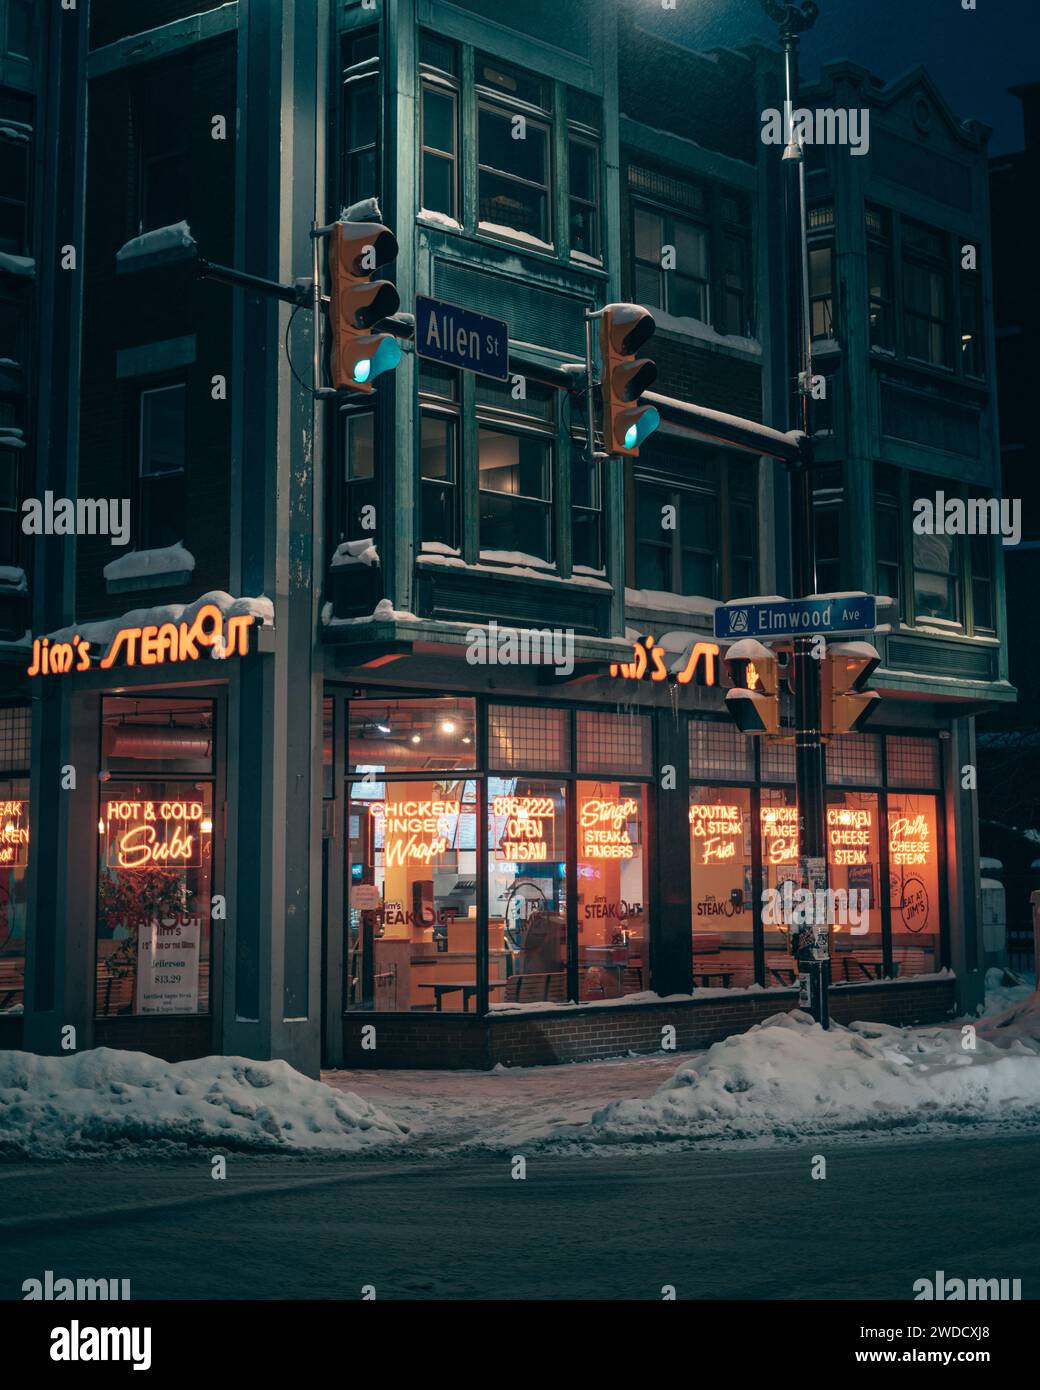 Jims Steakout signe de nuit à Allentown, Buffalo, New York Banque D'Images